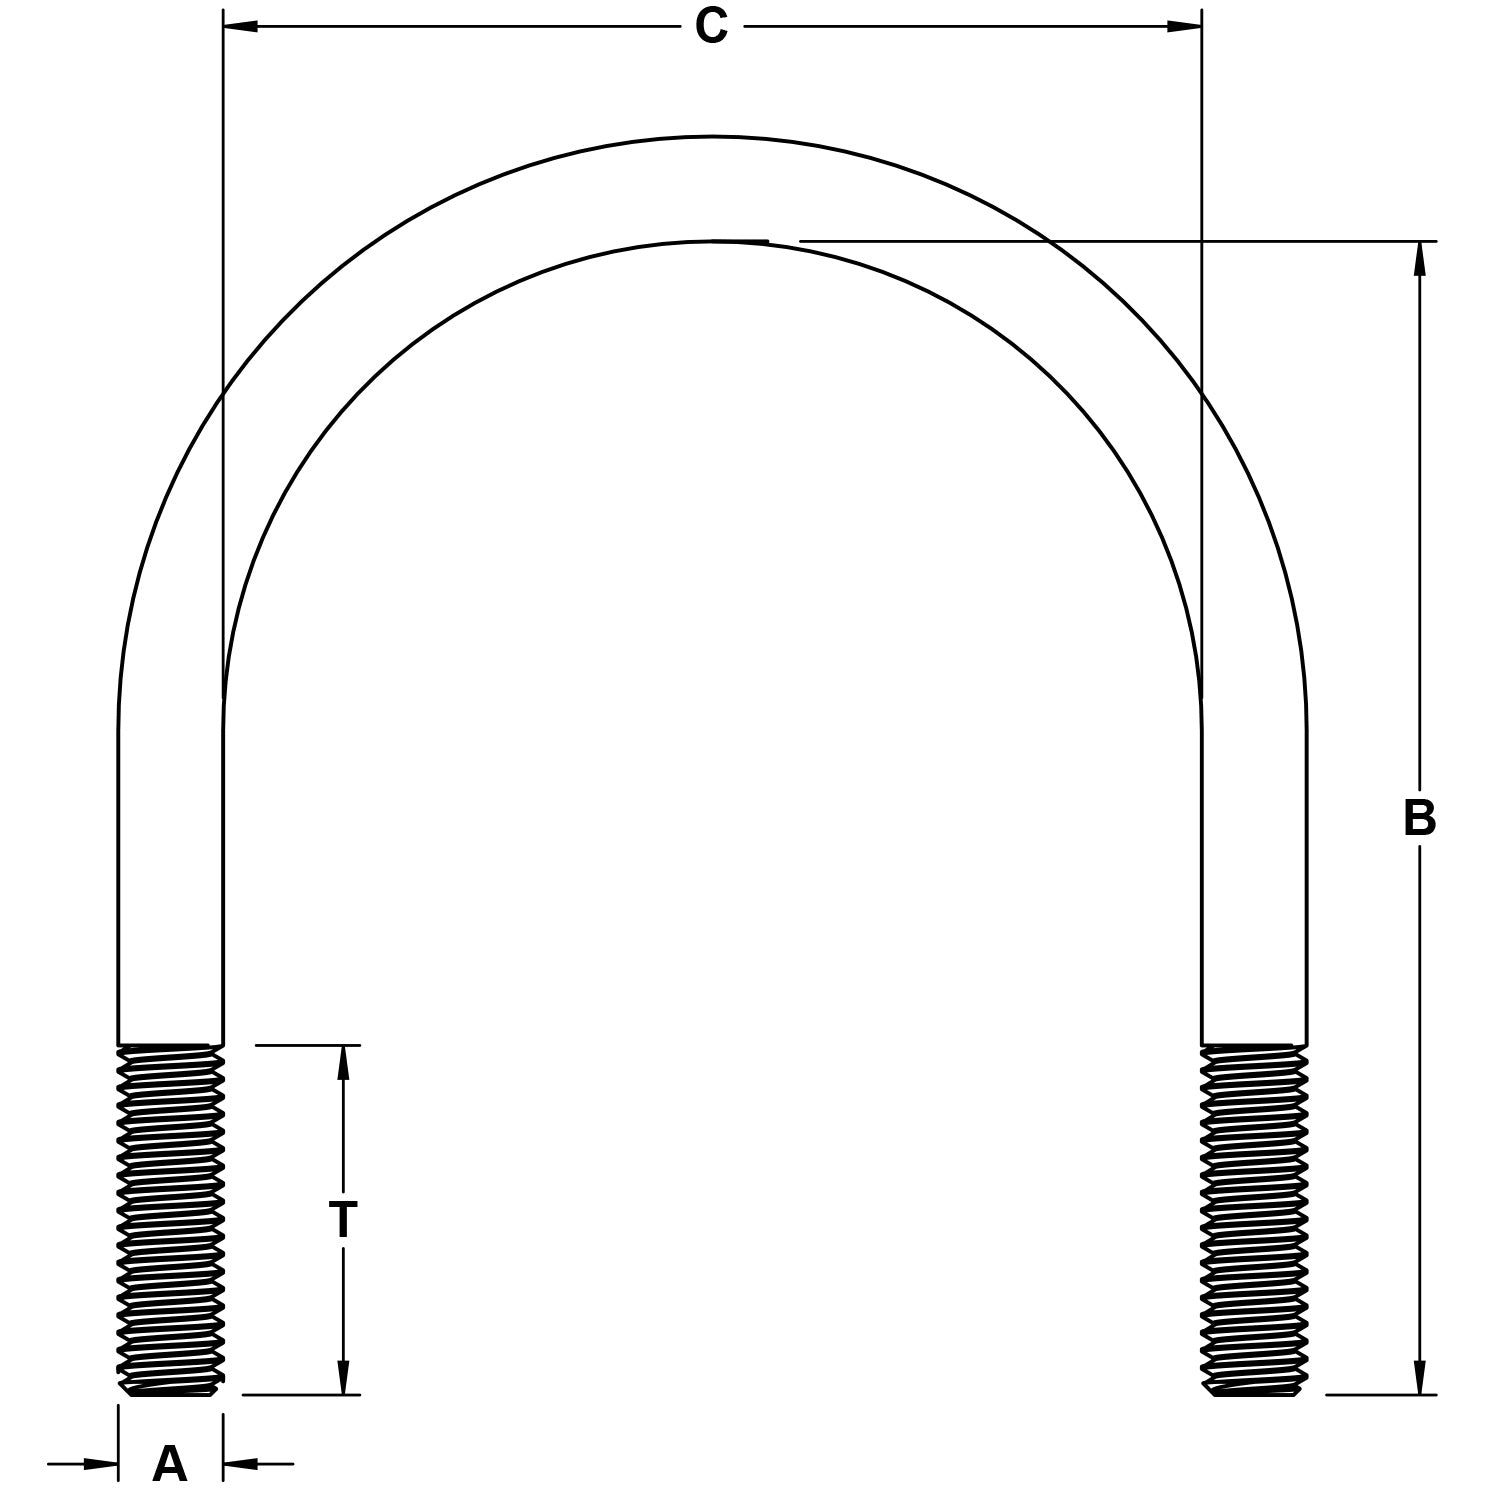 02-chicago-hardware-zinc-plated-round-bend-u-bolt-specs